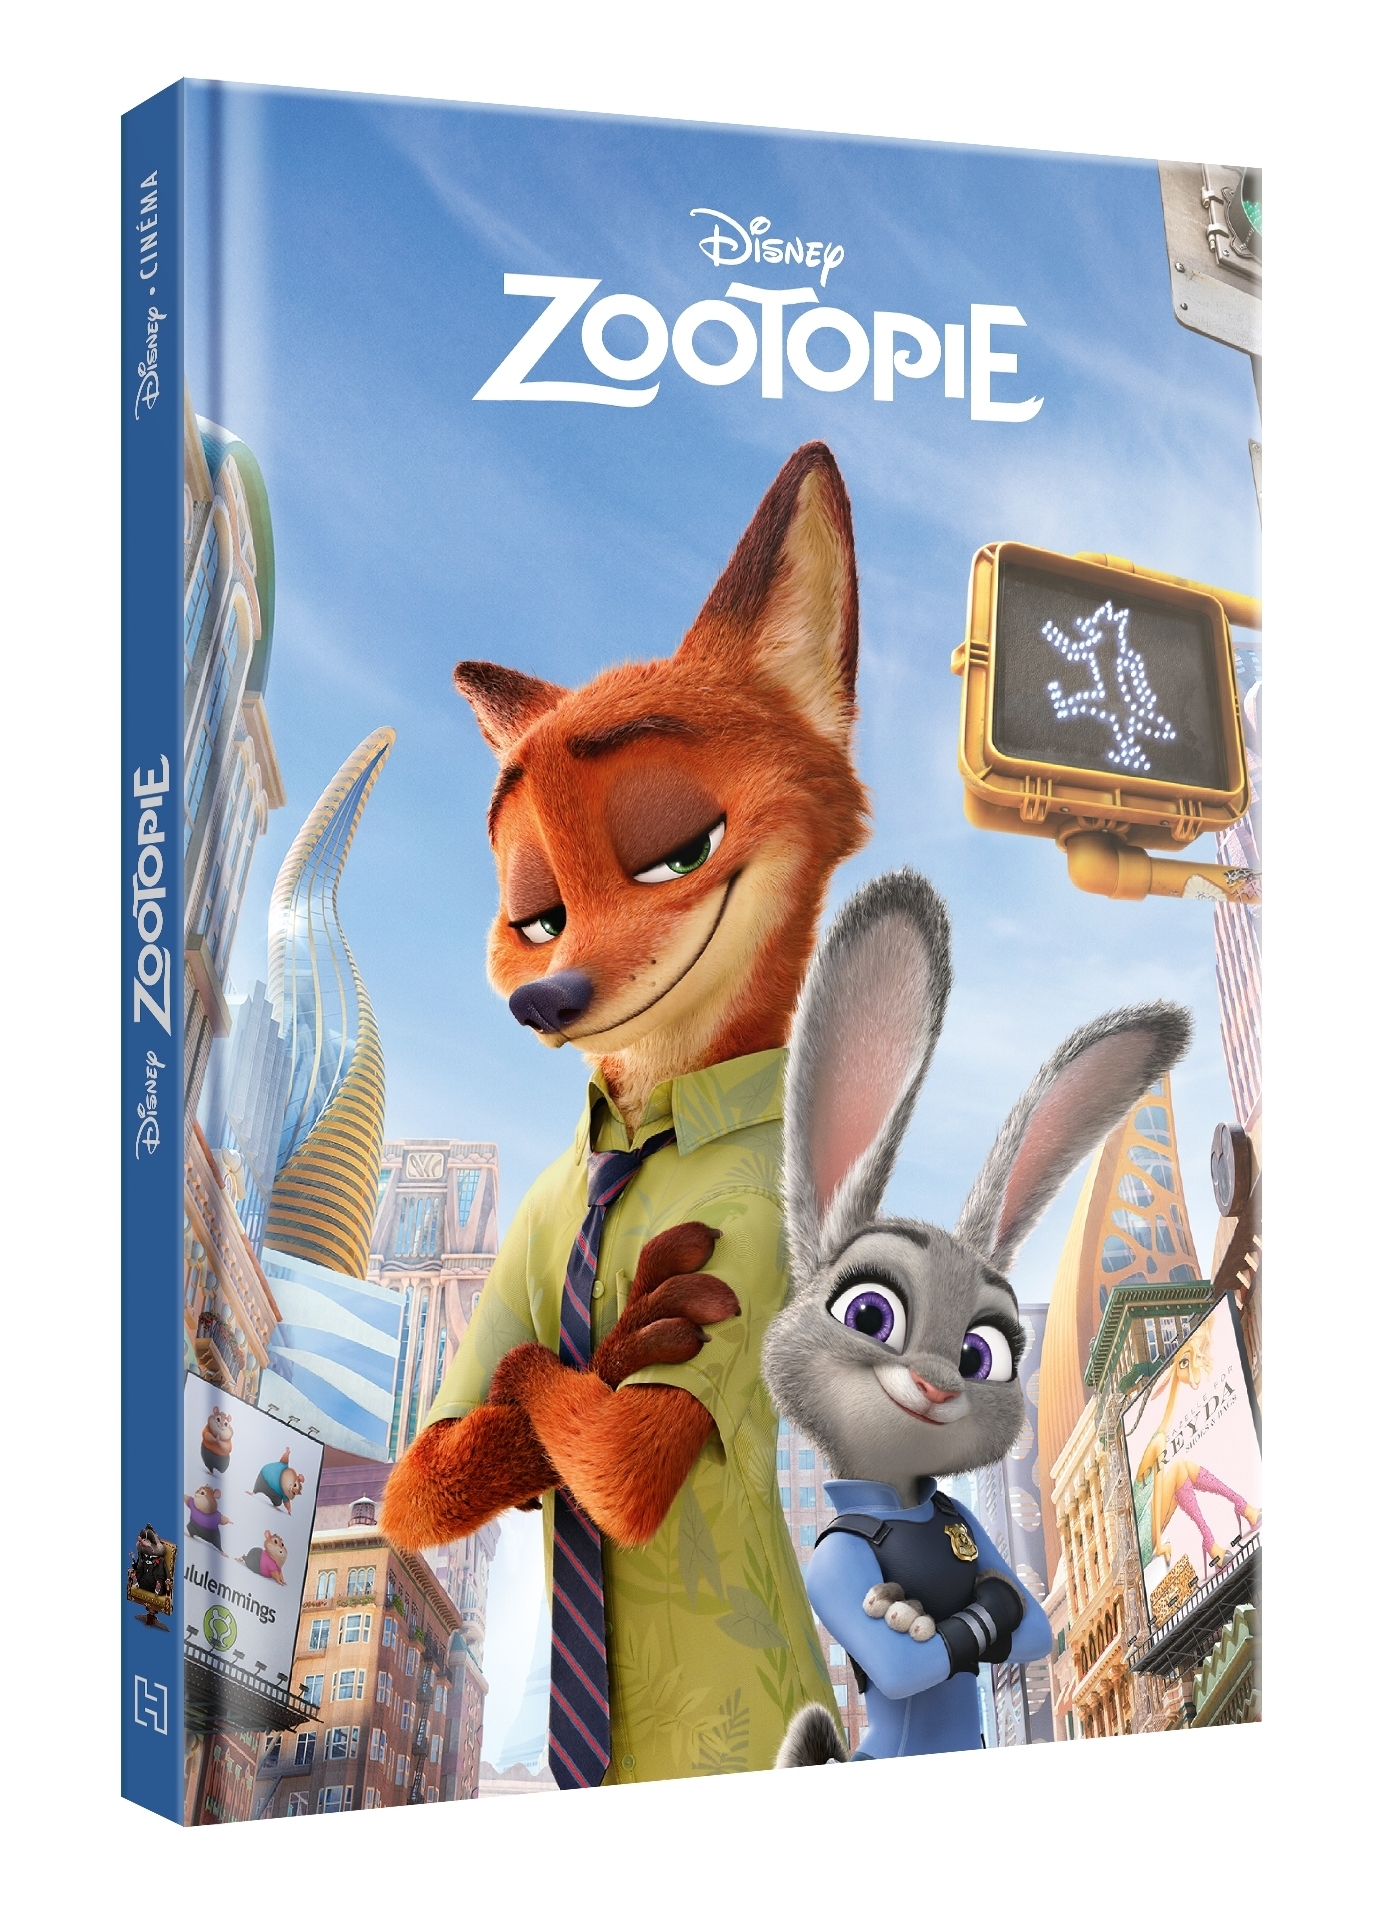 ZOOTOPIE - Mon histoire à écouter - L'histoire du film - Livre CD - Disney  - COLLECTIF: 9782017116592 - AbeBooks